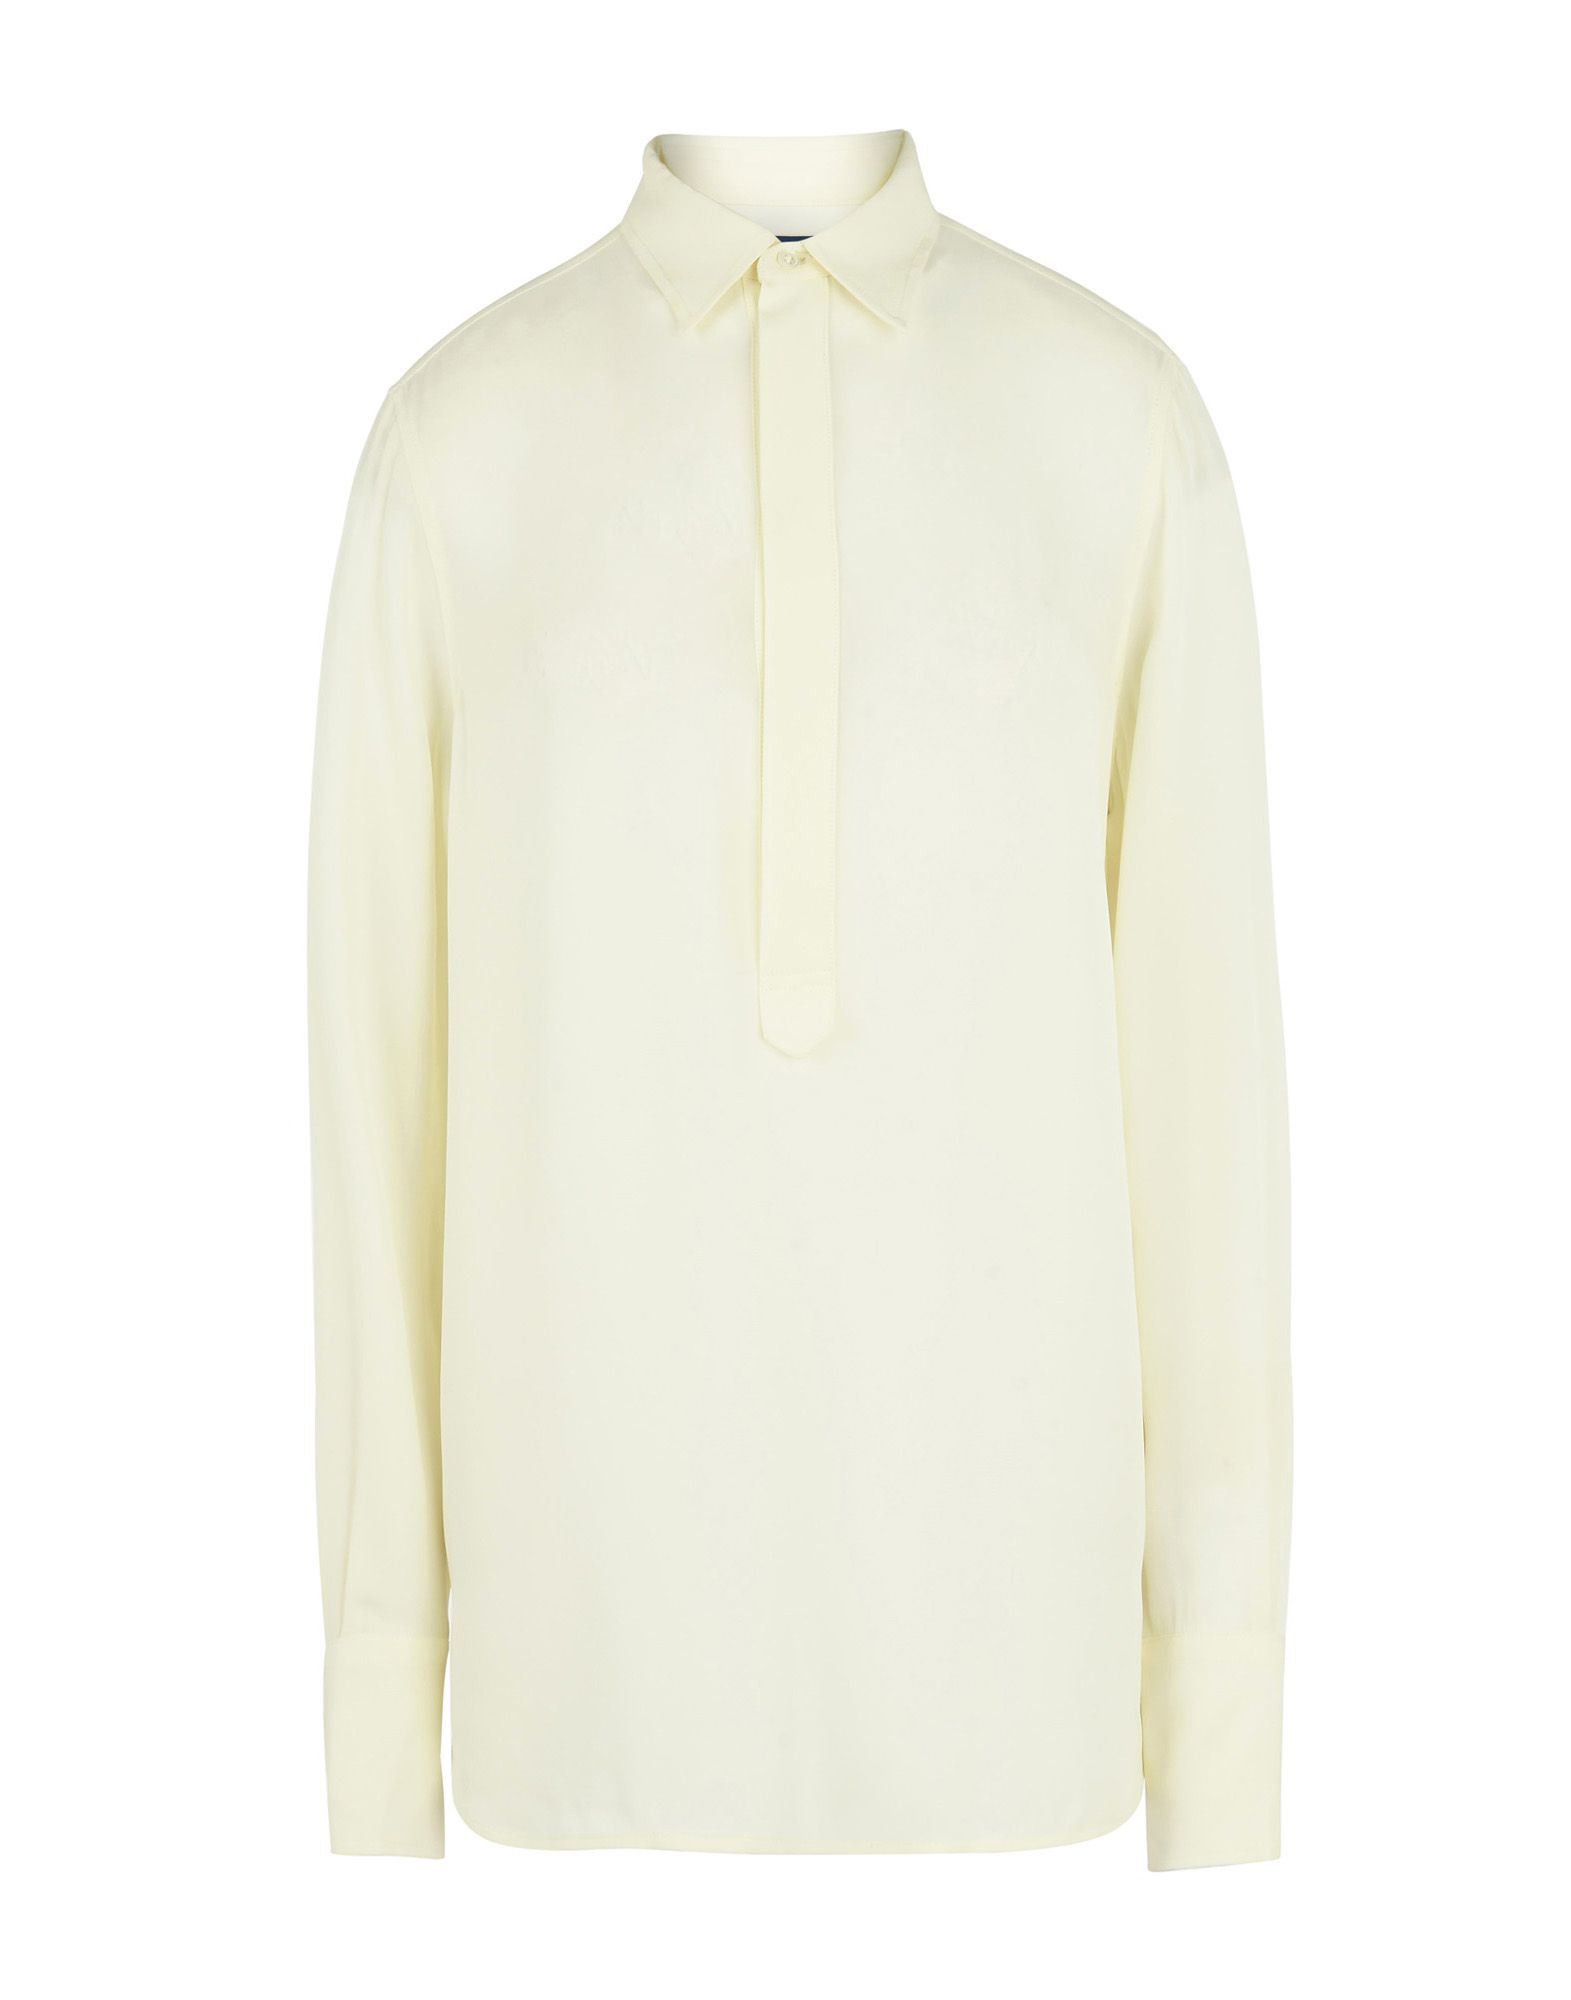 《送料無料》POLO RALPH LAUREN レディース ブラウス アイボリー XS シルク 100% Silk Georgette Shirt